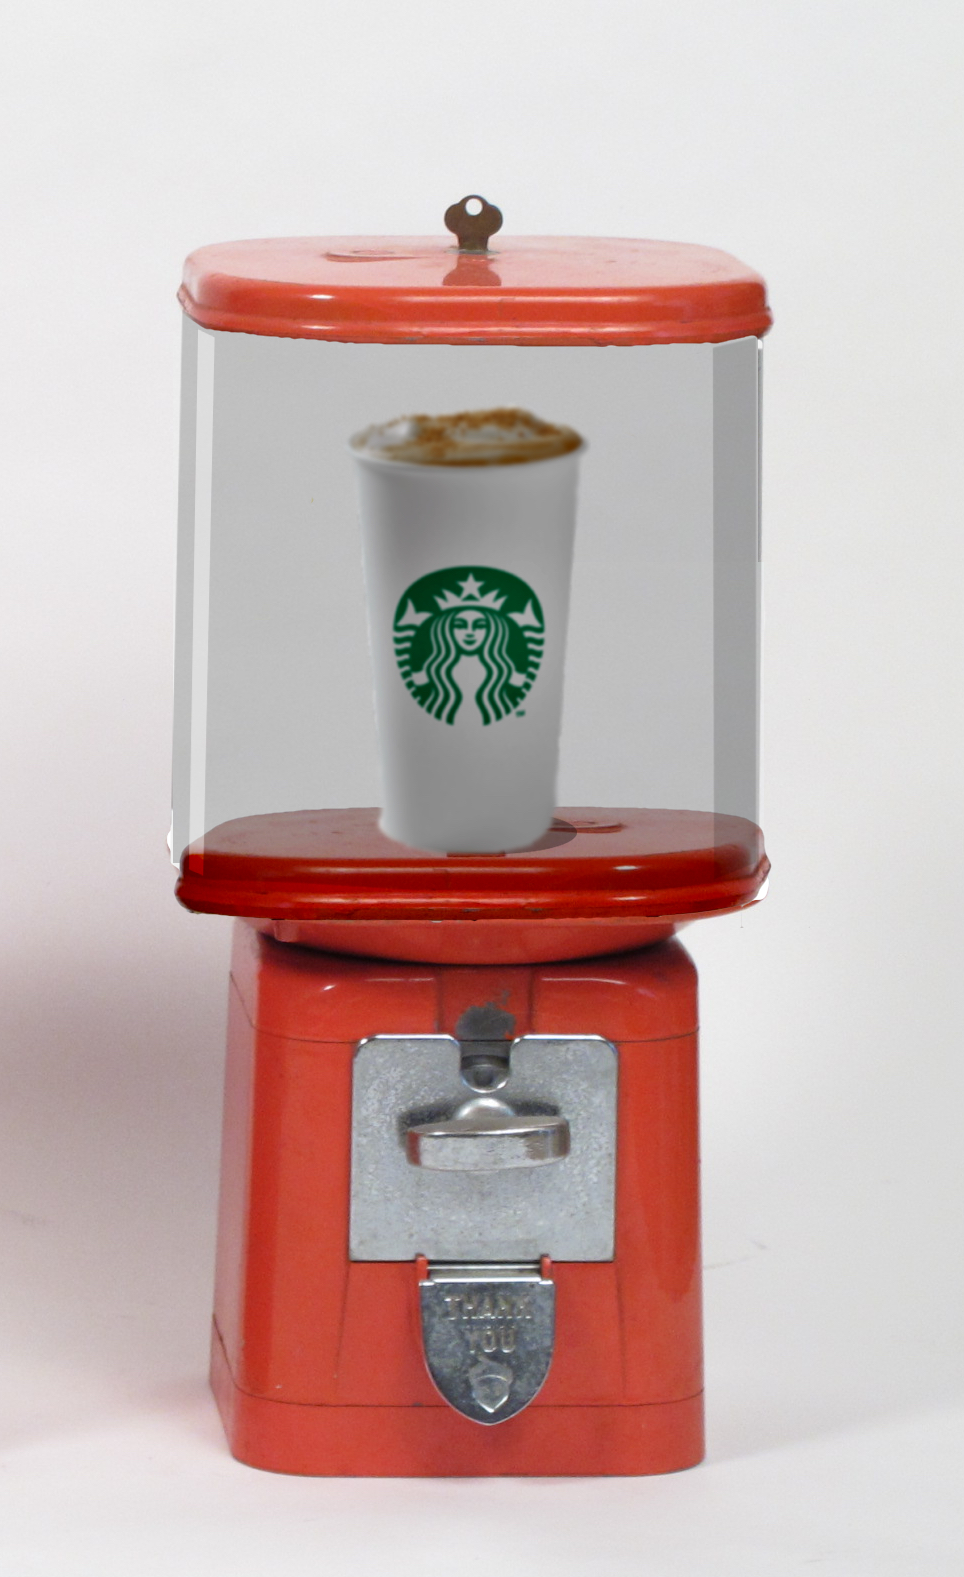 Starbucks Vending Machine